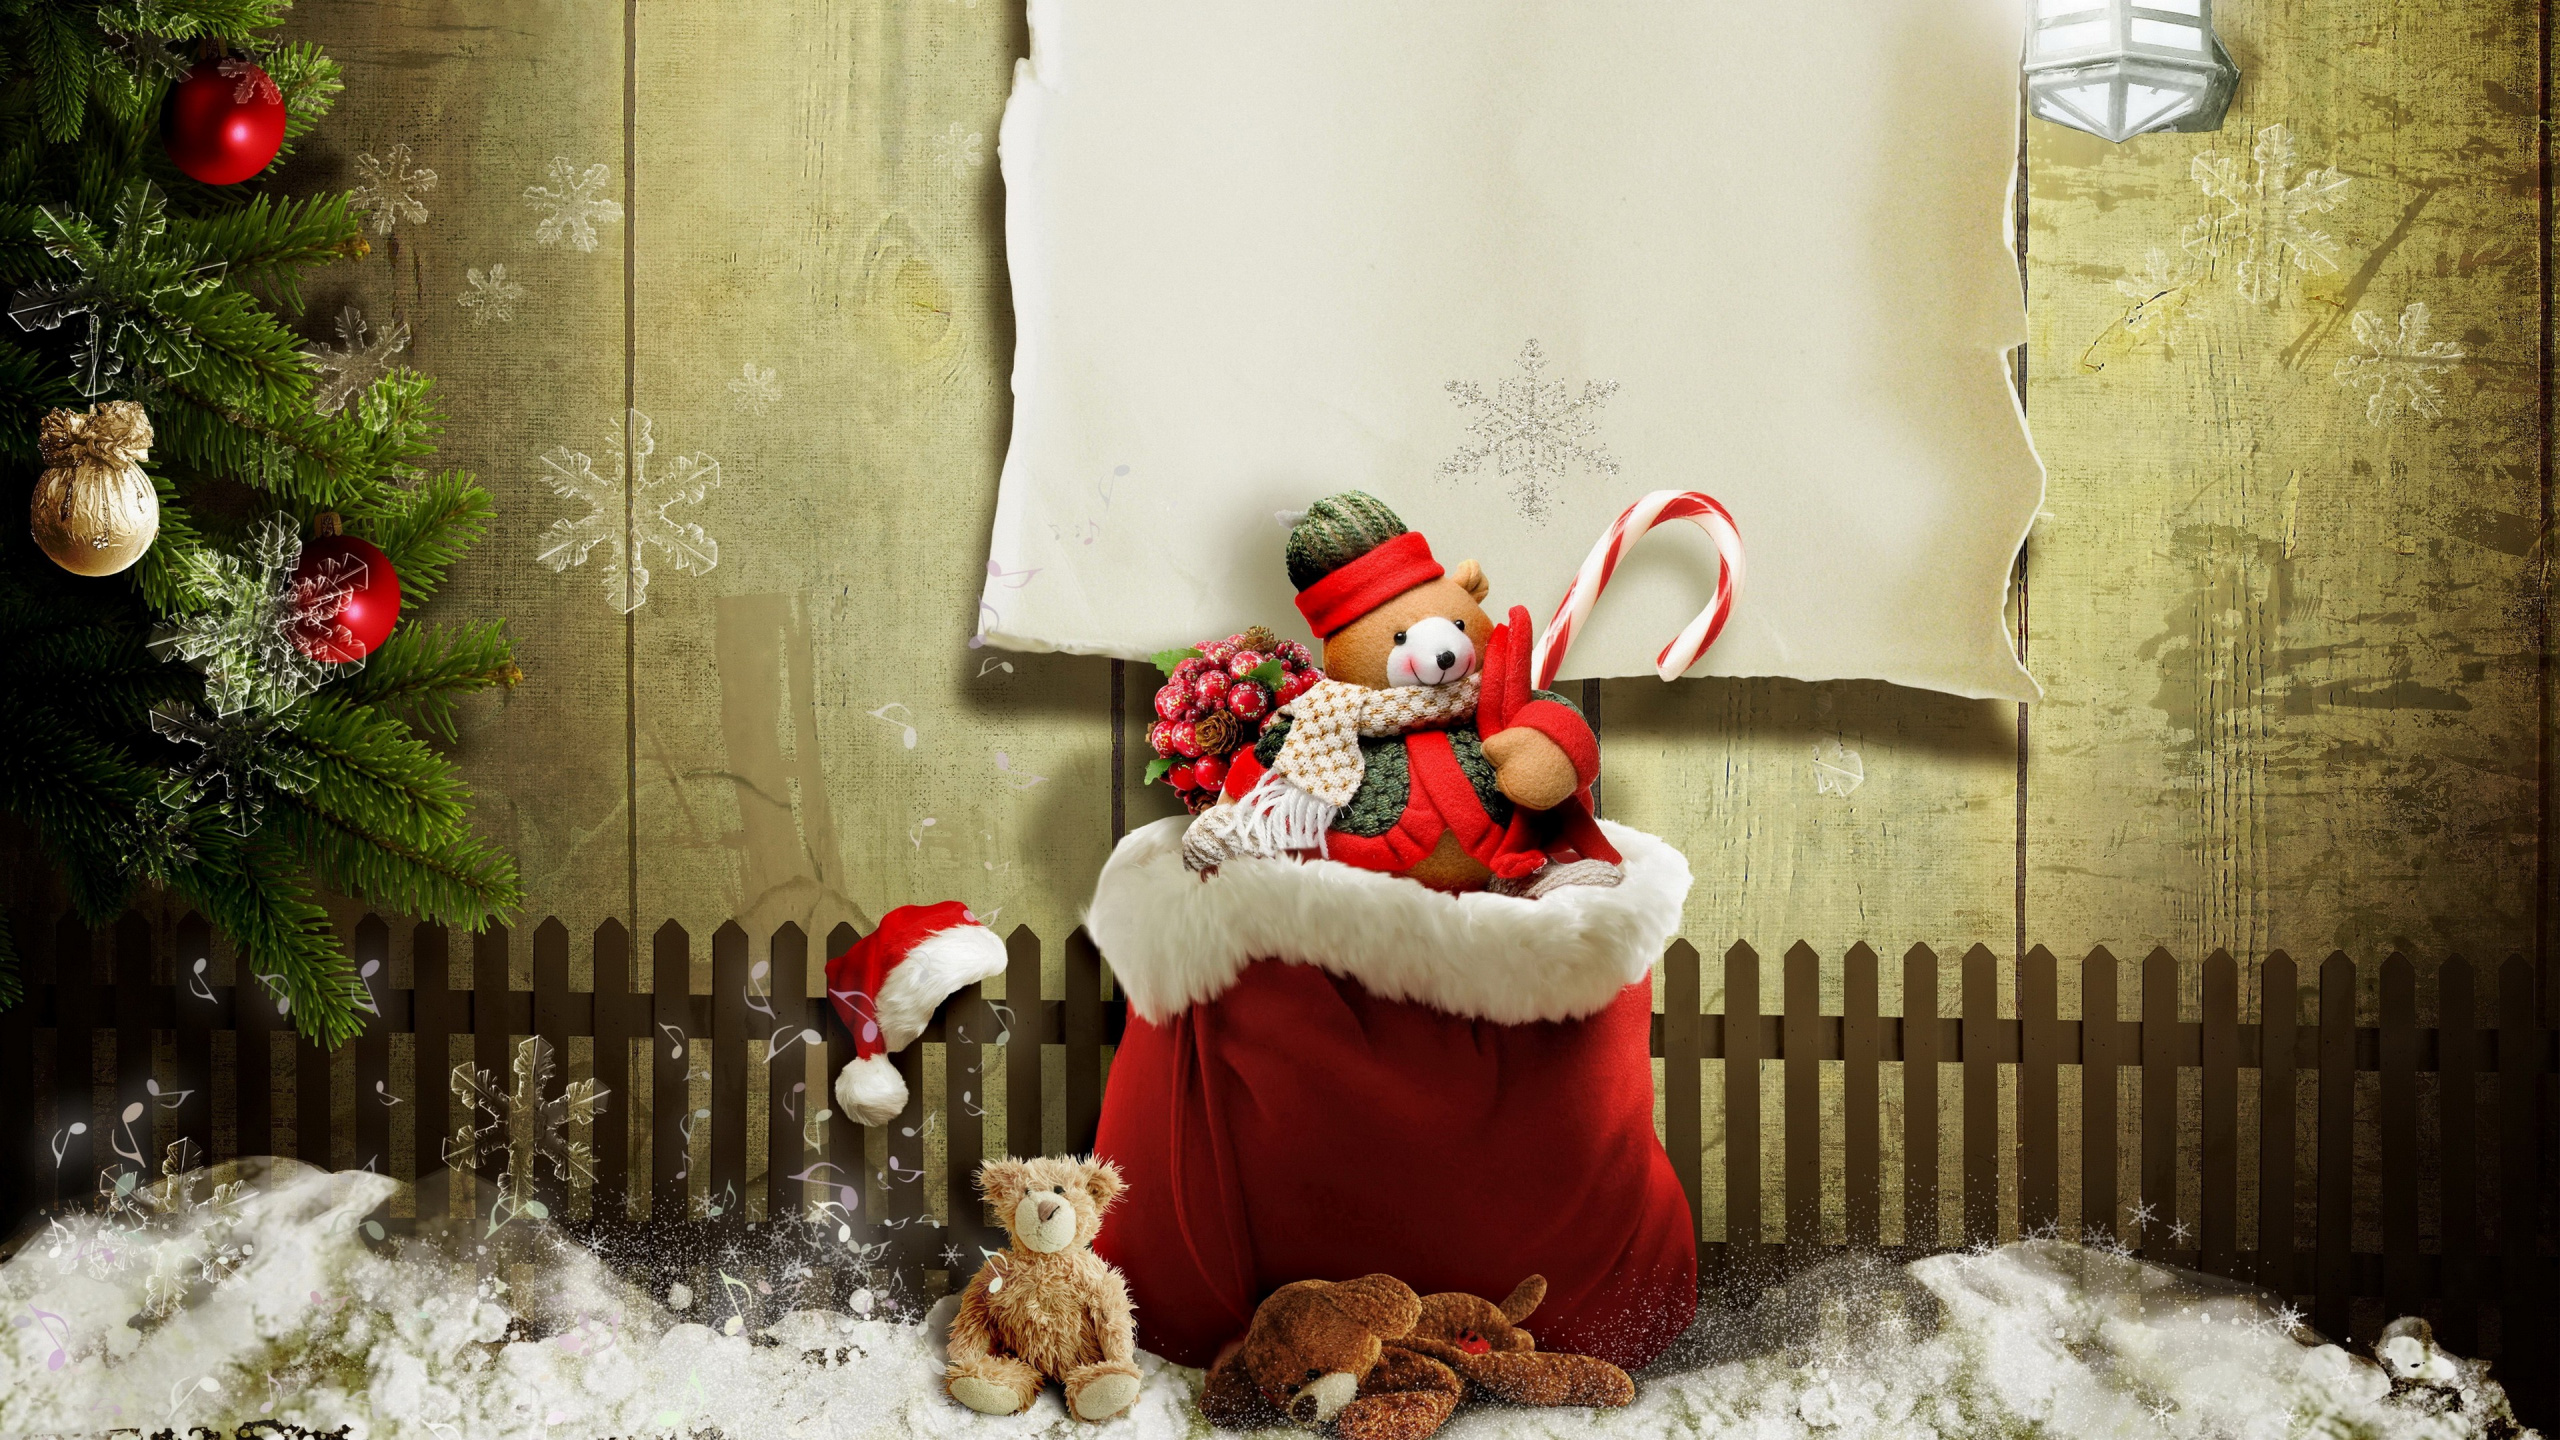 Weihnachten, Weihnachtsmann, Weihnachtsgeschenk, Christmas Ornament, Winter. Wallpaper in 2560x1440 Resolution